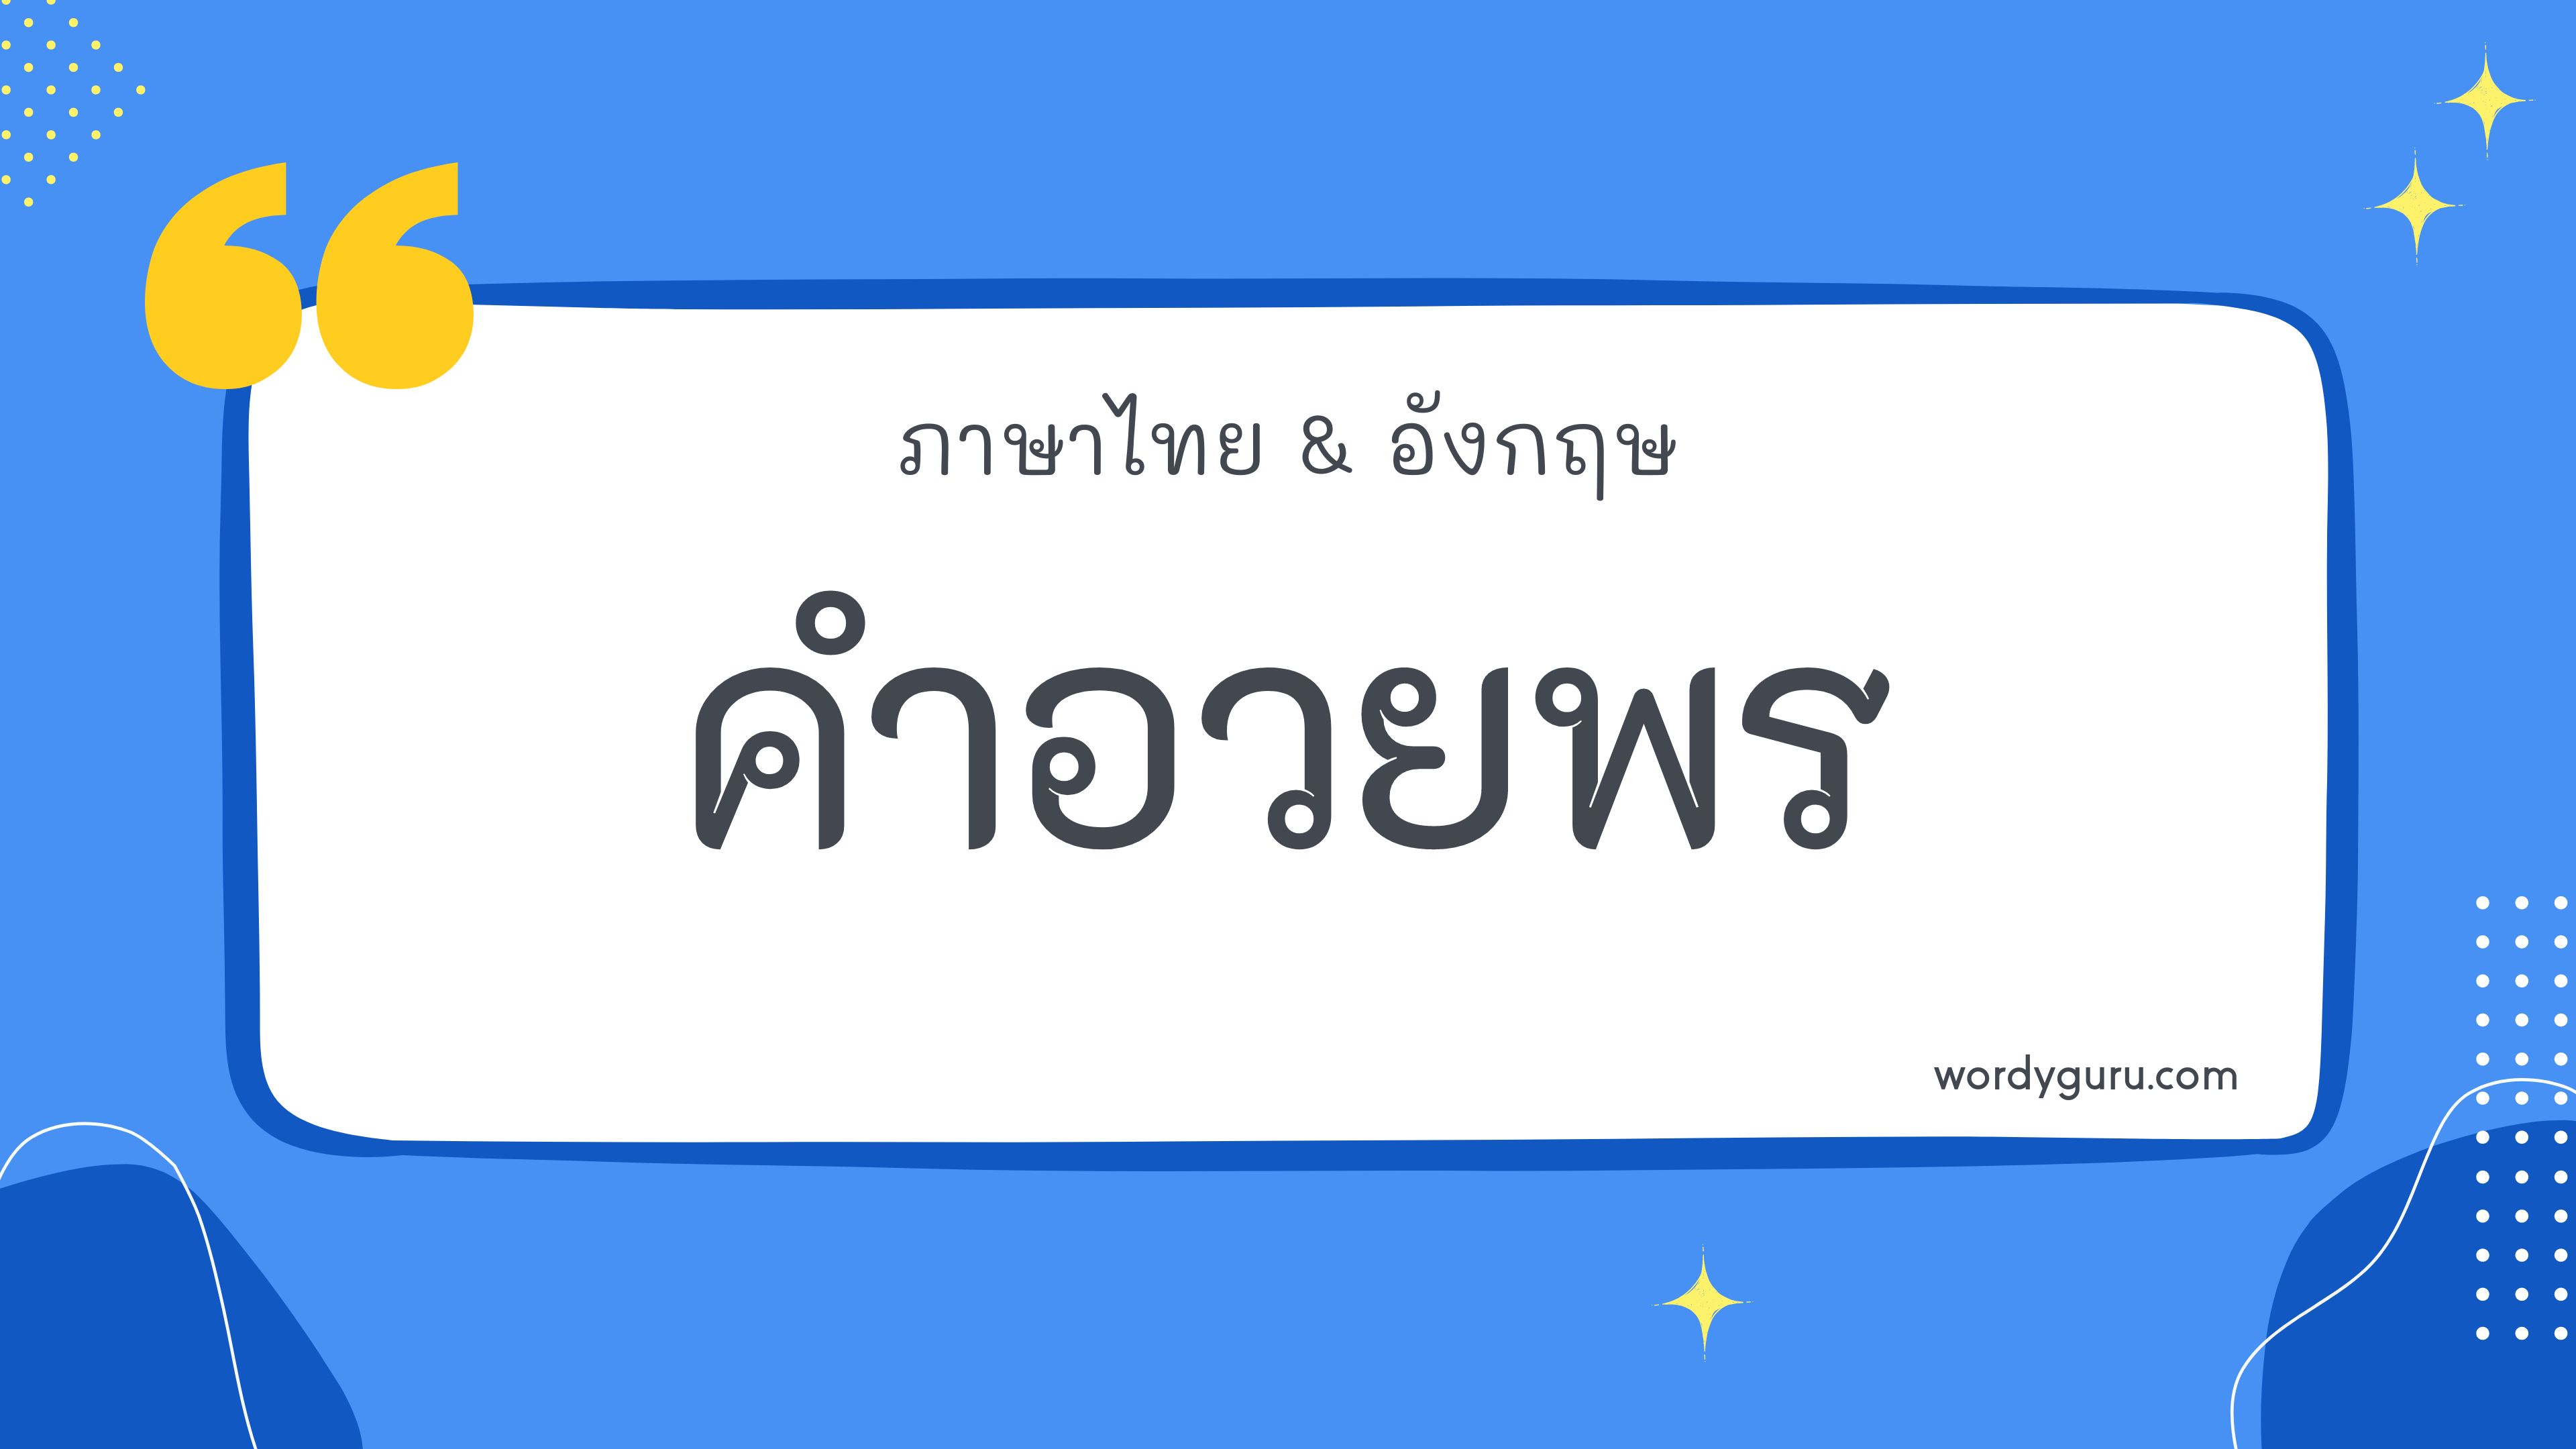 รวมคำอวยพร วันเกิด วันปีใหม่ วันแต่งงาน ภาษาไทย ภาษาอังกฤษ